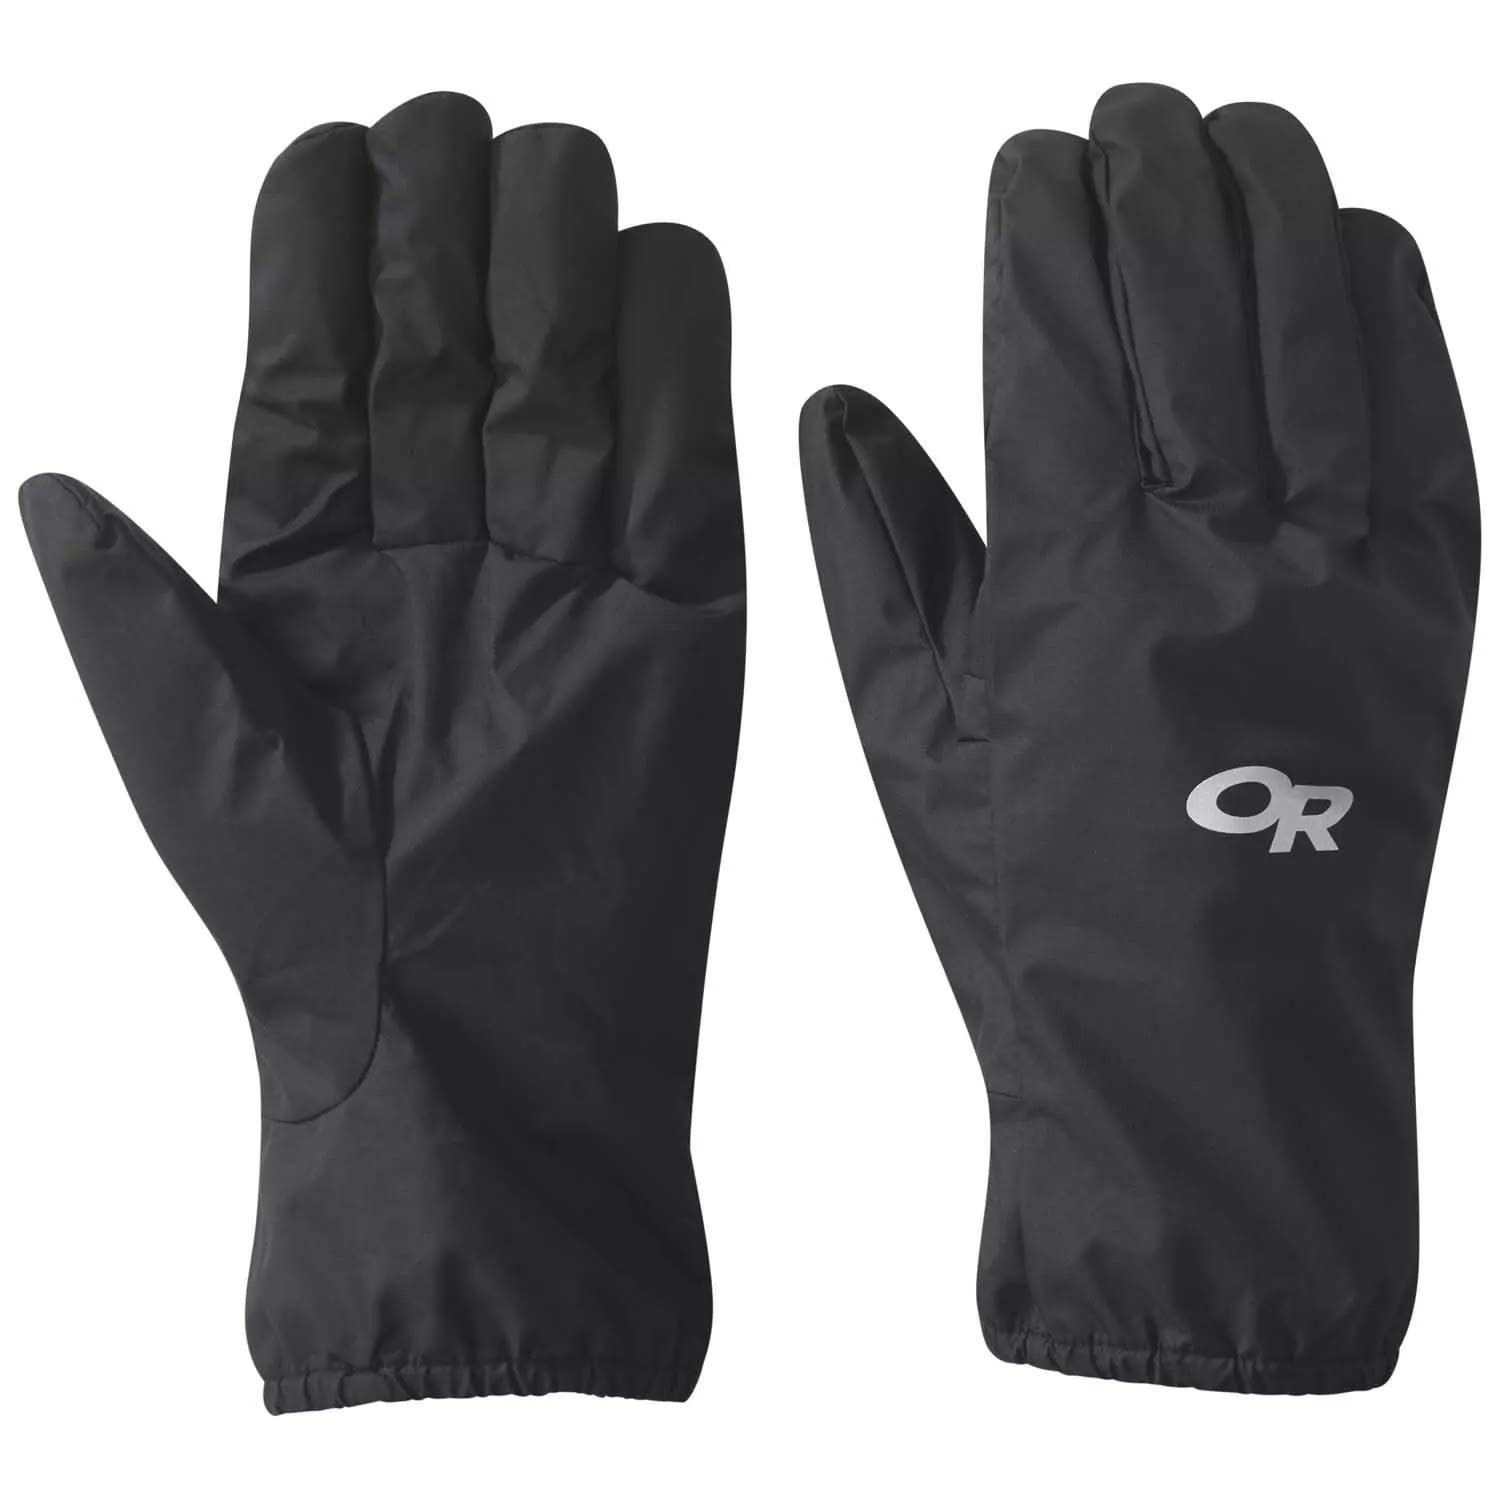 Outdoor Research Women's Versaliner Sensor Gloves Black